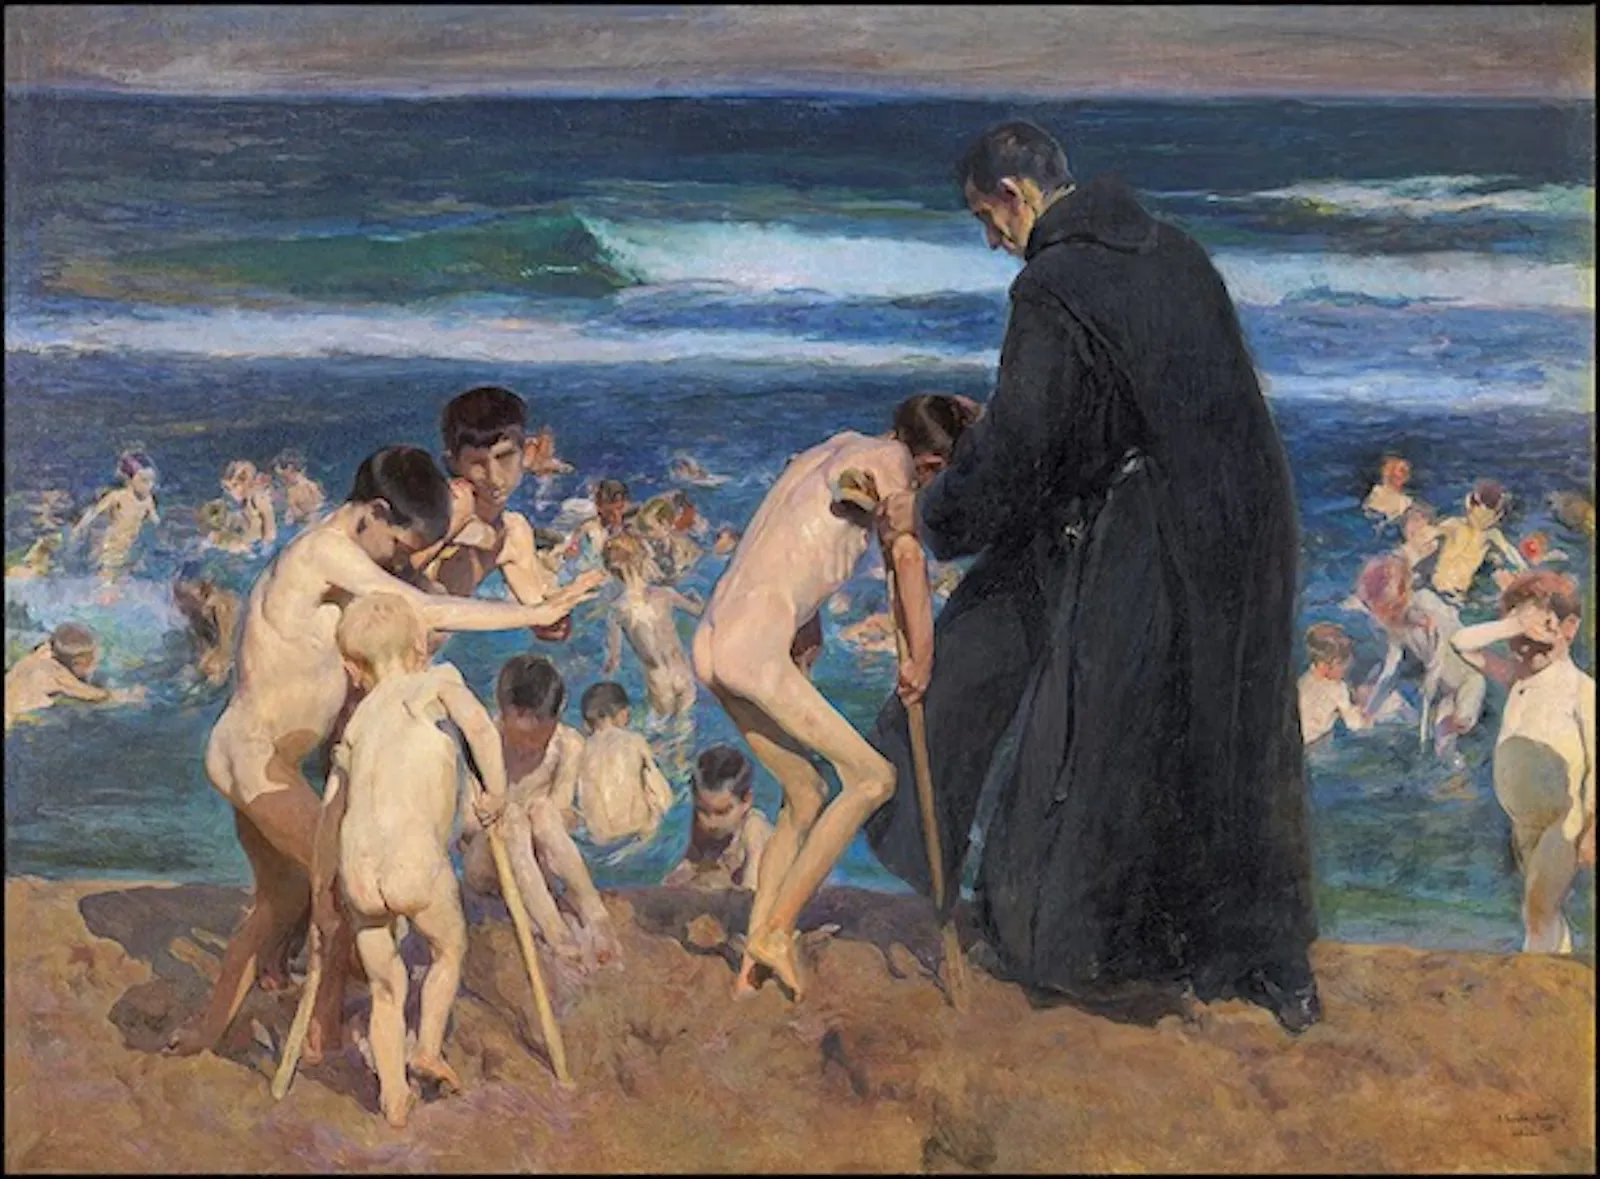 Am Strand hilft ein Priester einer Gruppe von behinderten Kindern, im Meer zu schwimmen